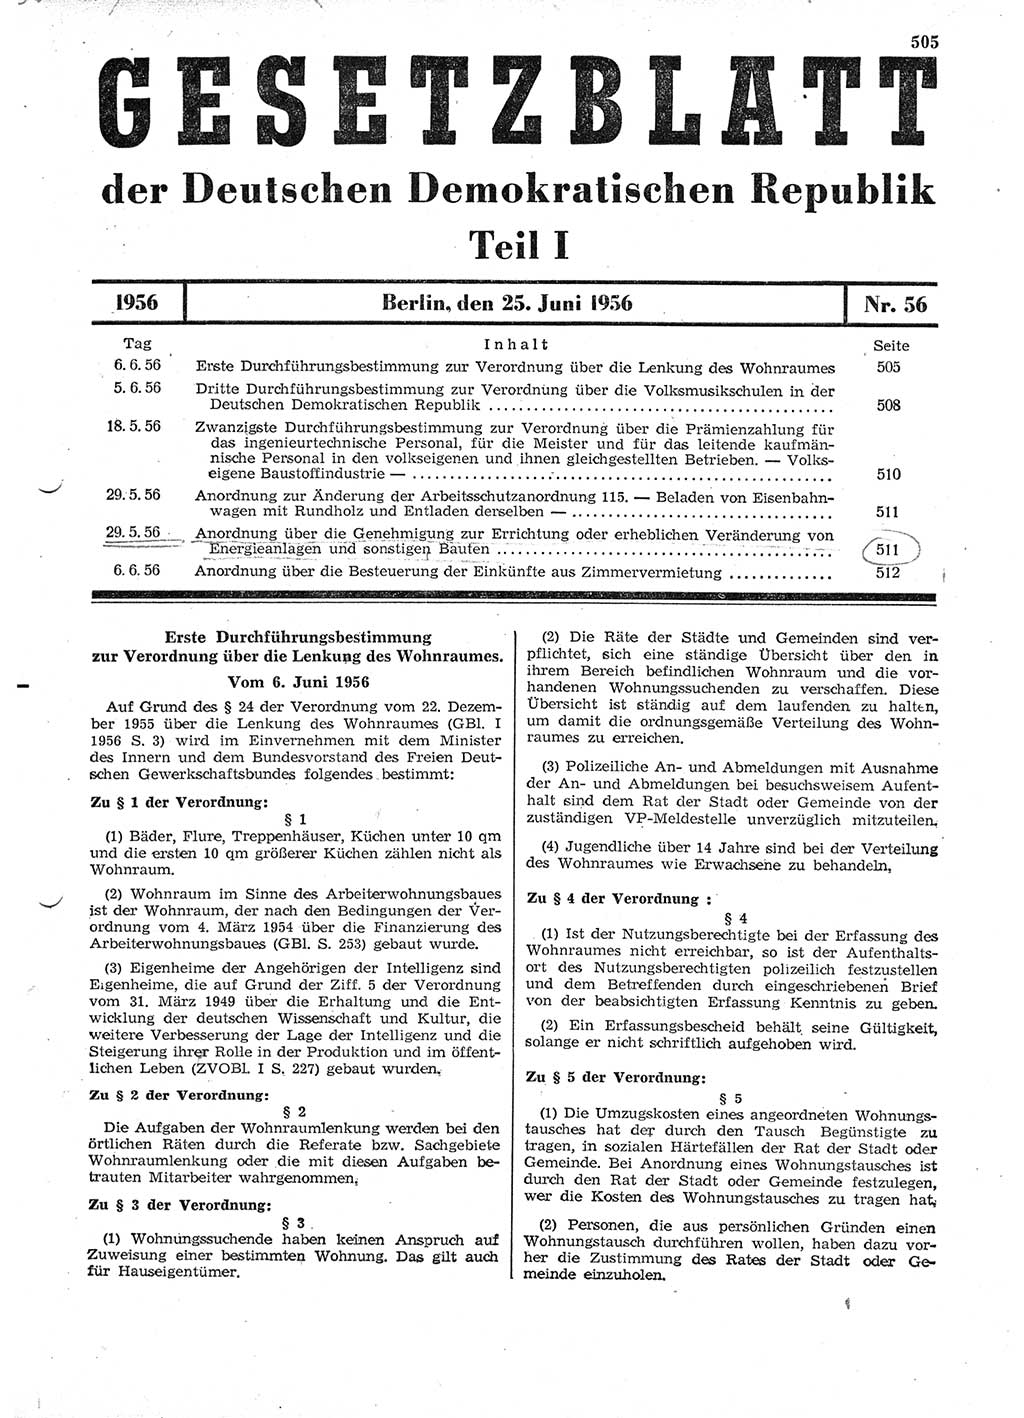 Gesetzblatt (GBl.) der Deutschen Demokratischen Republik (DDR) Teil Ⅰ 1956, Seite 505 (GBl. DDR Ⅰ 1956, S. 505)